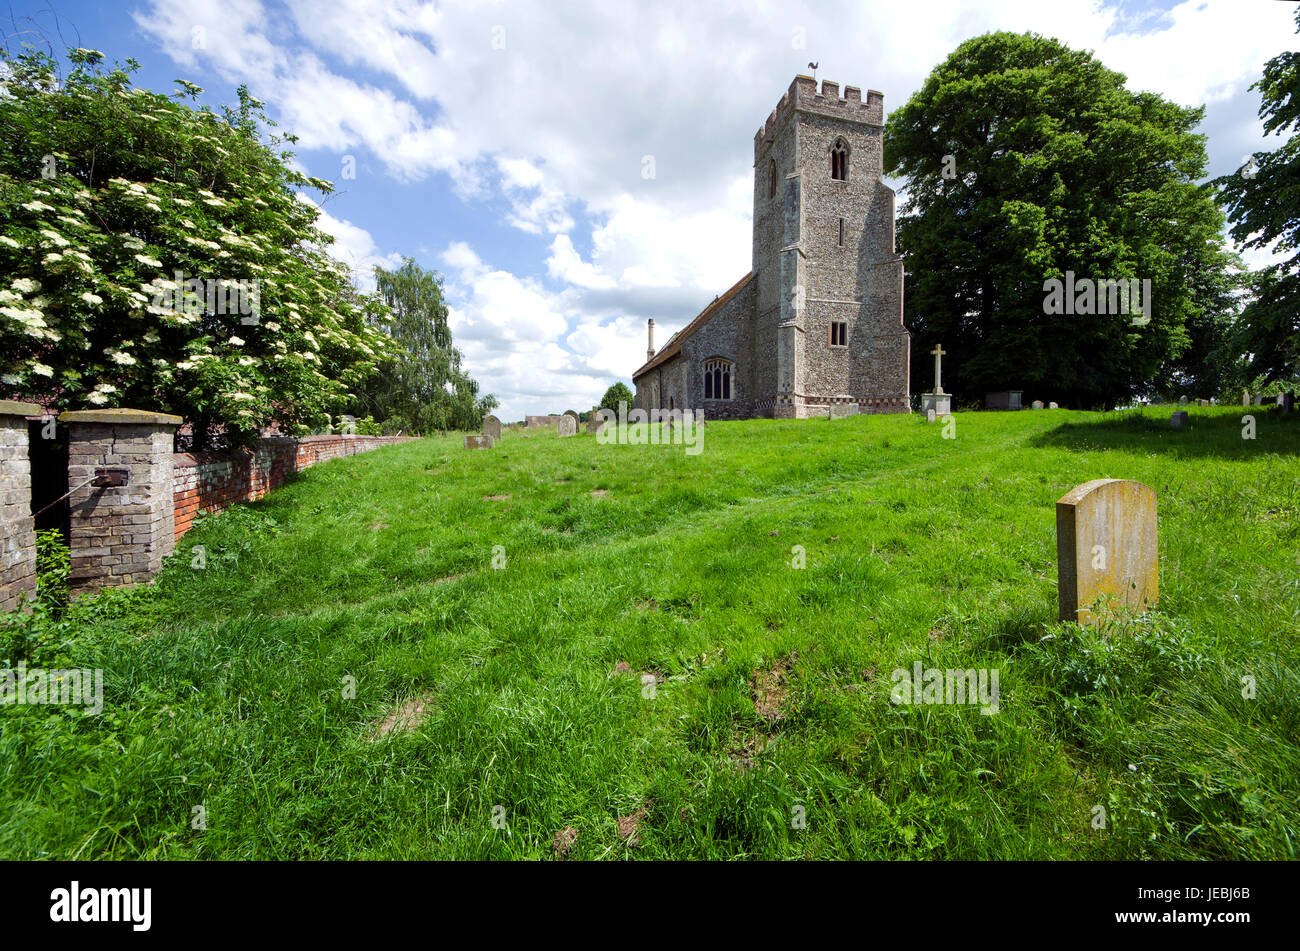 Die Pfarrei St. Andrews in Essex Dorf von Bulmer 4 Meilen westlich von Sudbury stammt aus dem 12. Jahrhundert mit einem 15. Jahrhundert Turm Stockfoto